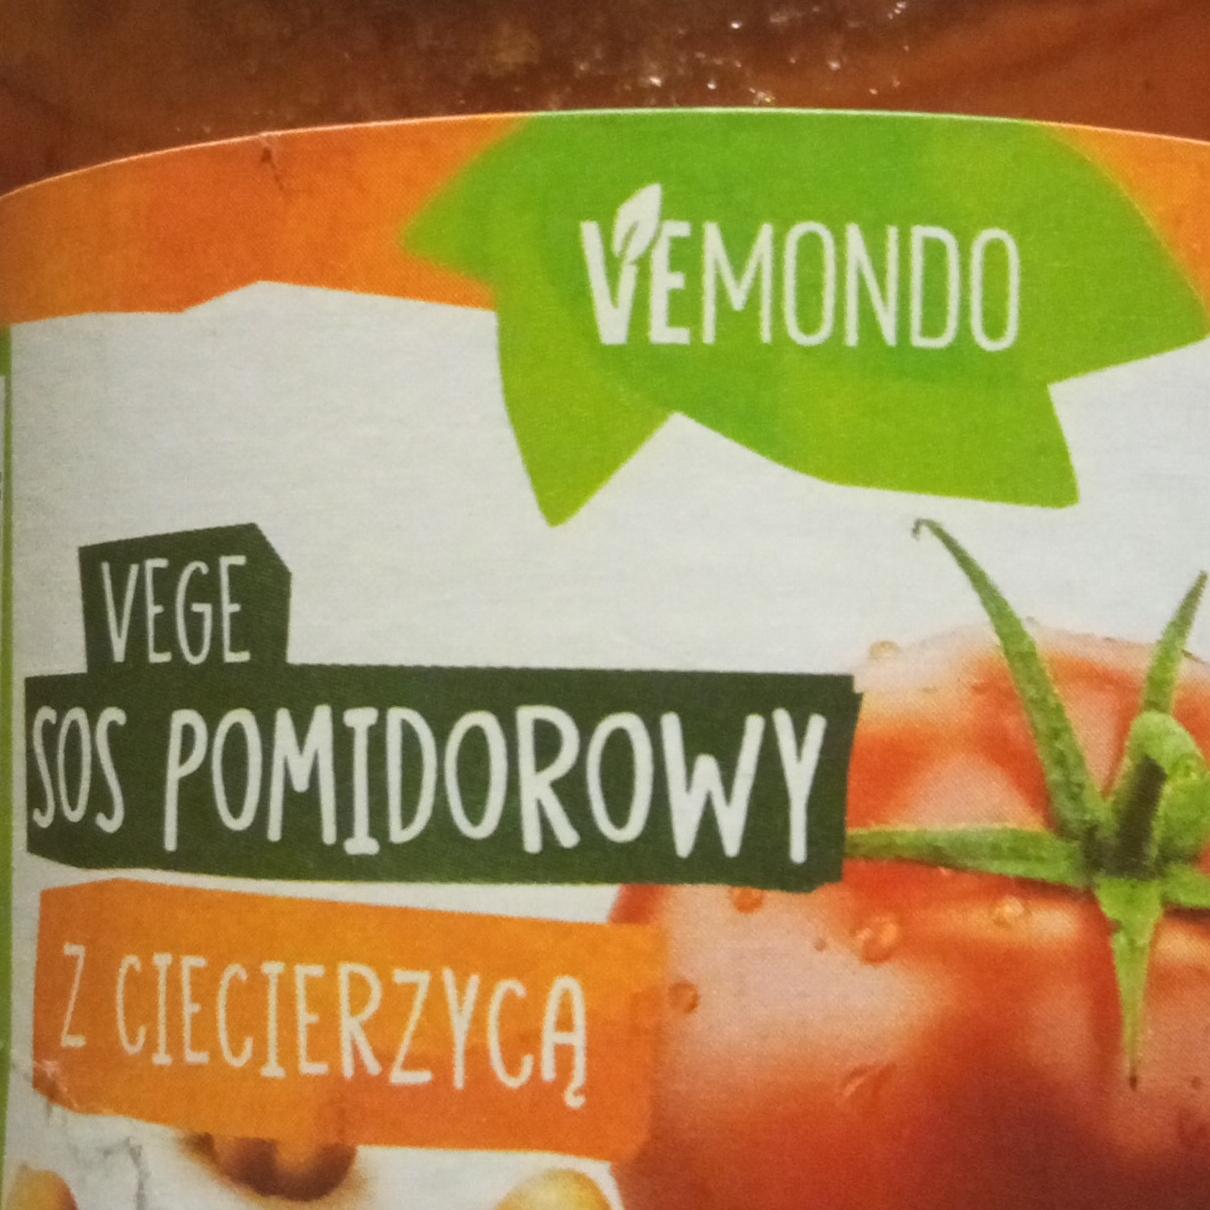 Fotografie - SOS pomidorowy z ciecierzyca Vemondo